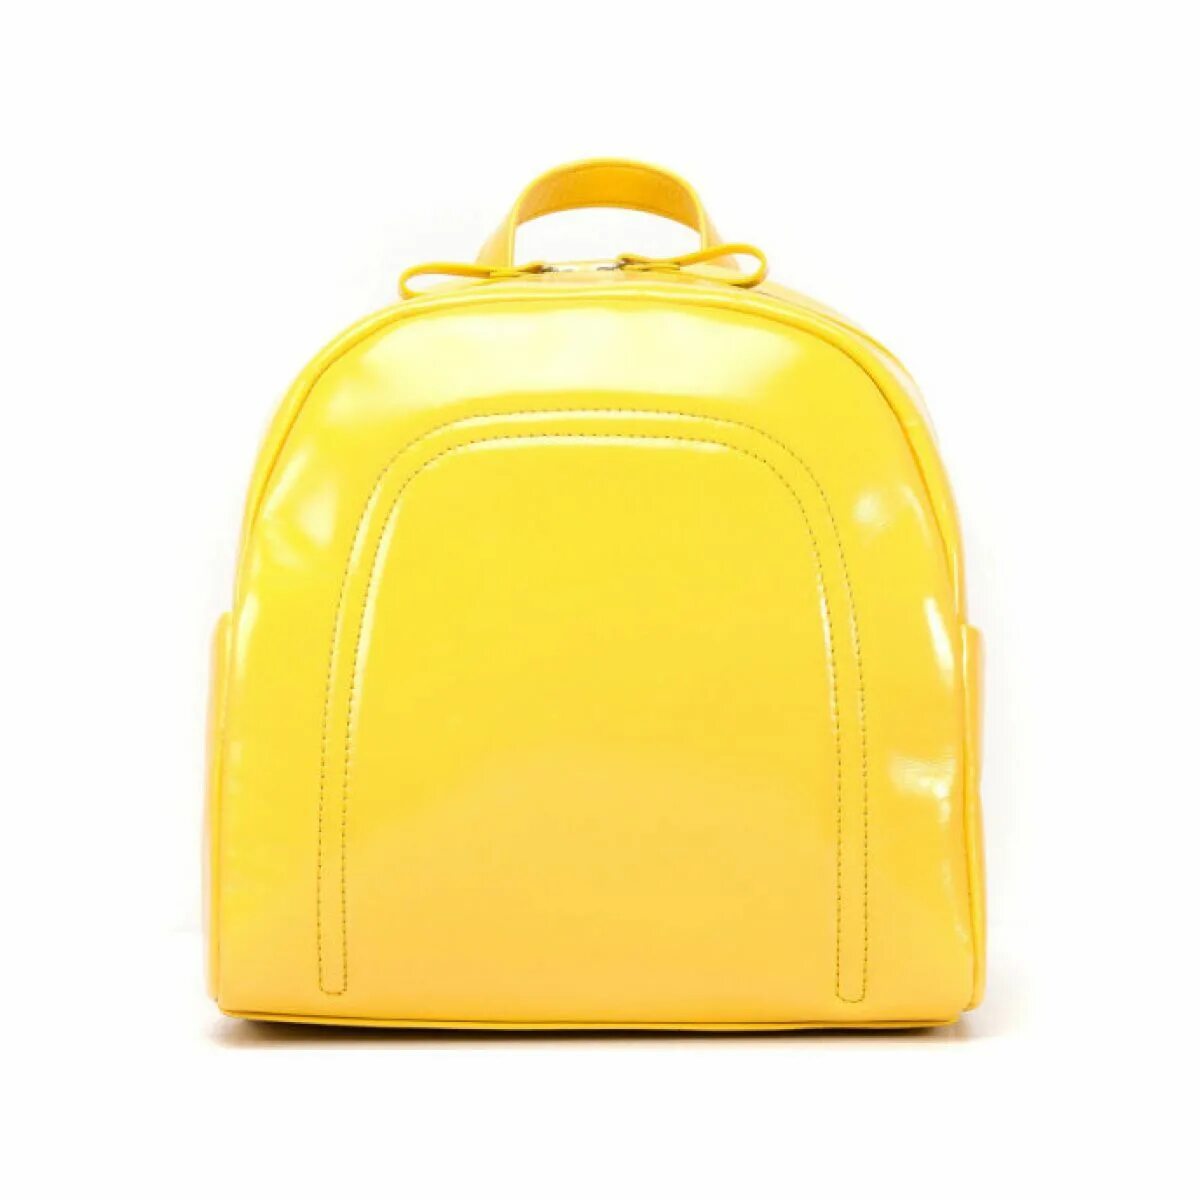 Желтый портфель. Рюкзак желтый. Желтый рюкзак женский. Рюкзак желтый кожаный женский.